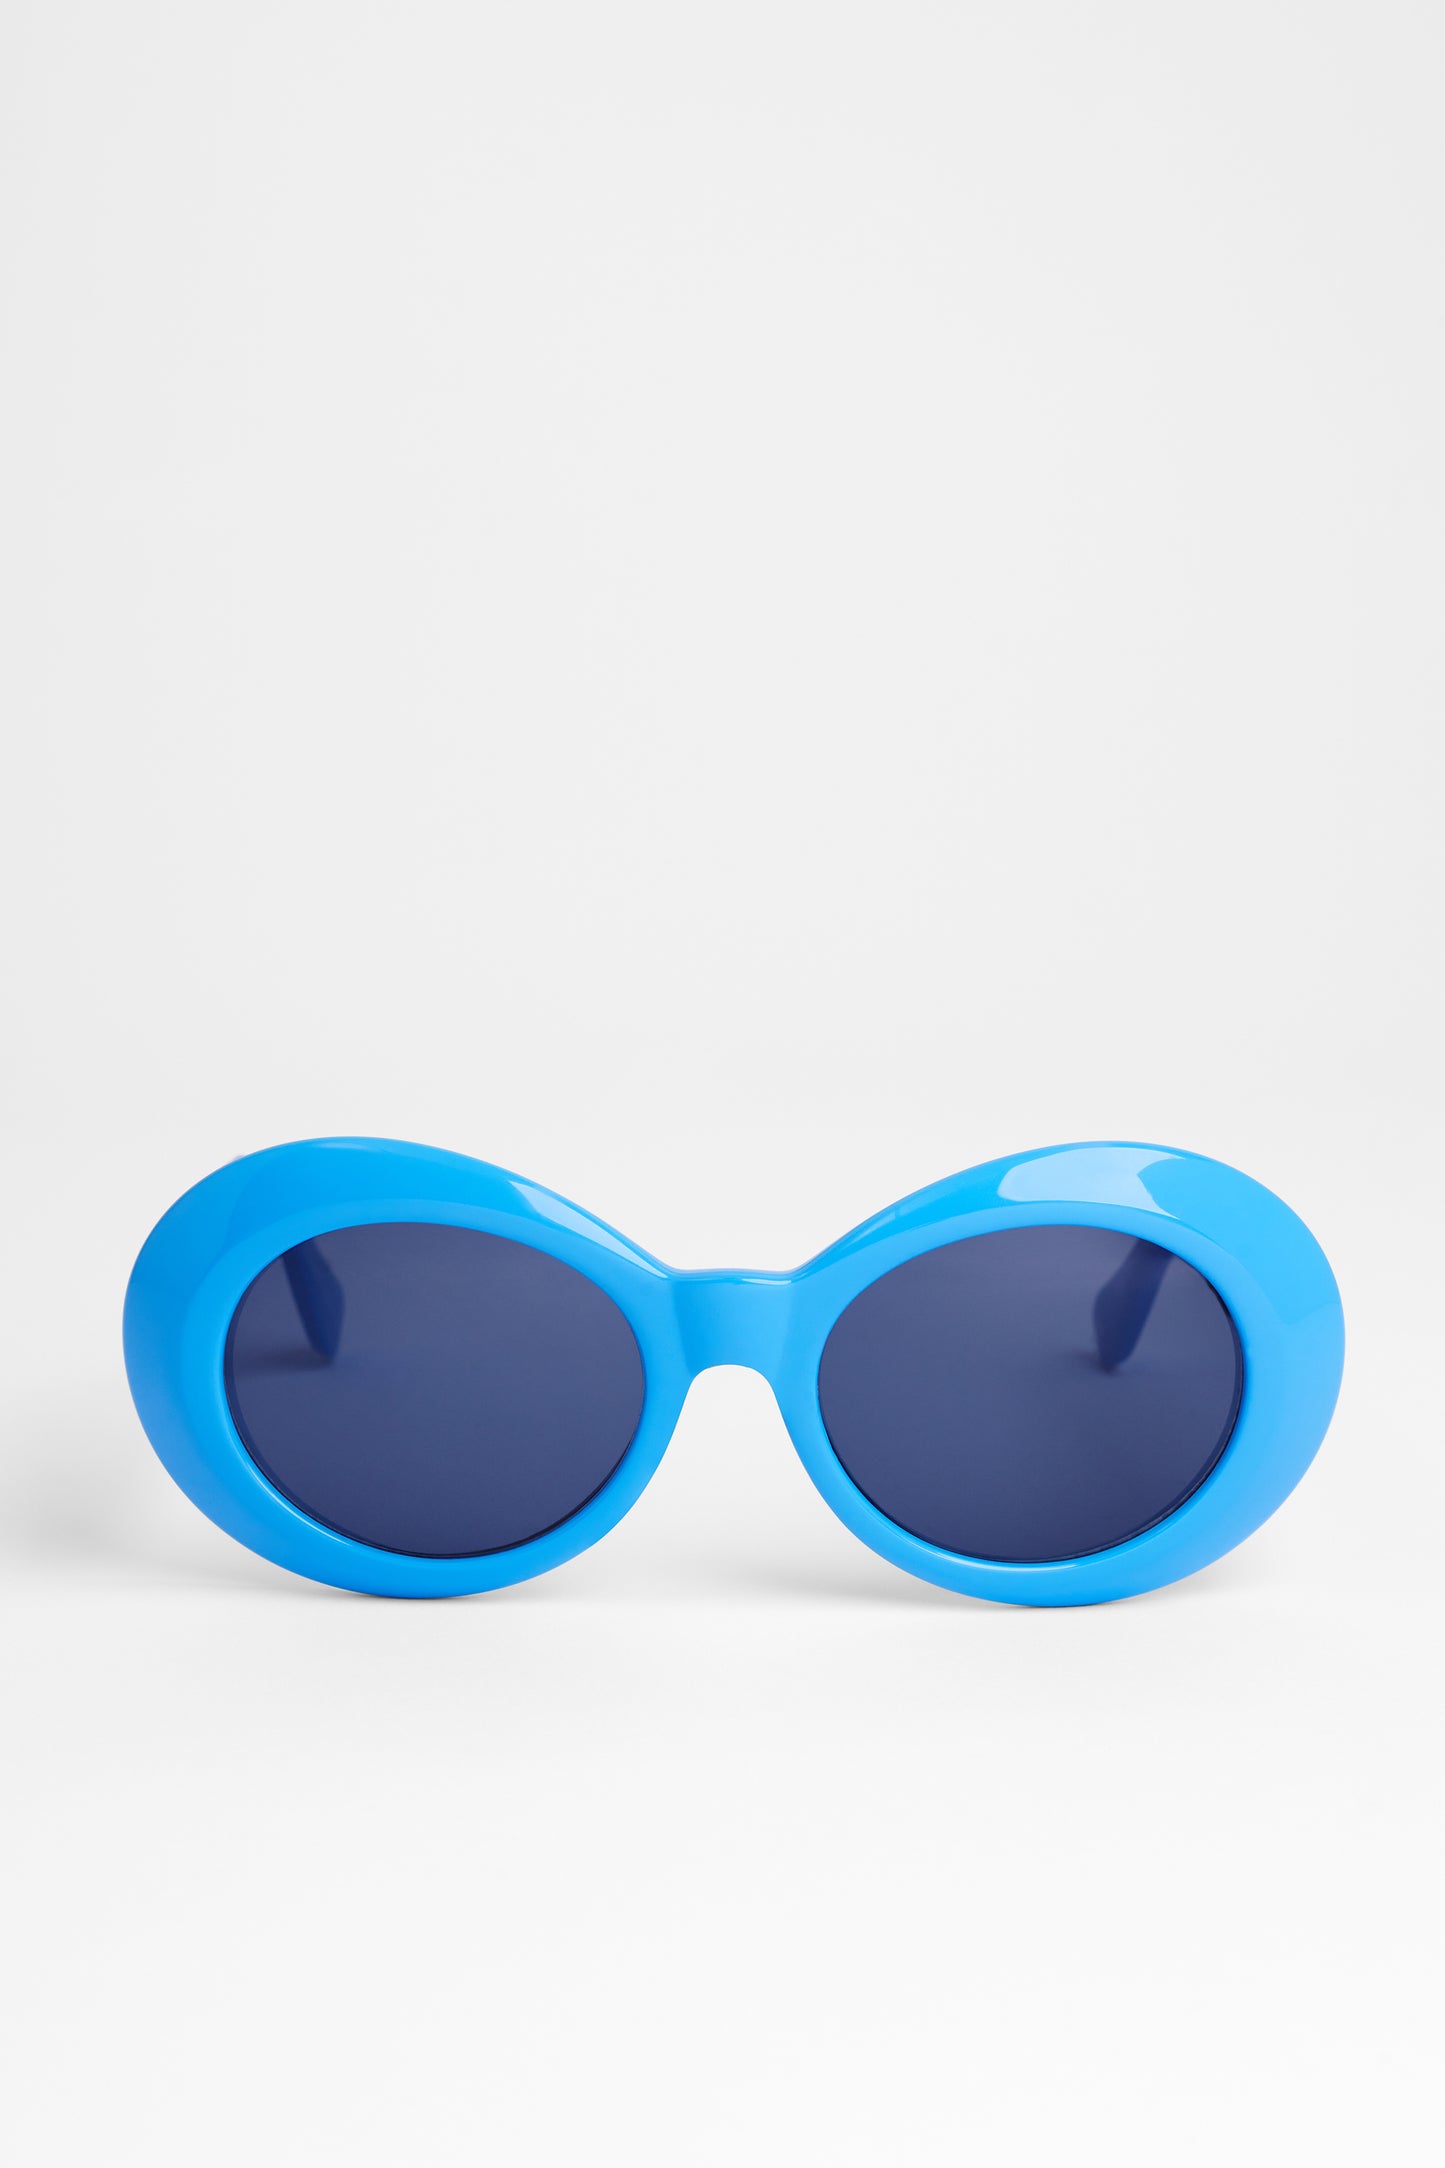 Circa 1990's Blue Frame Sunglasses